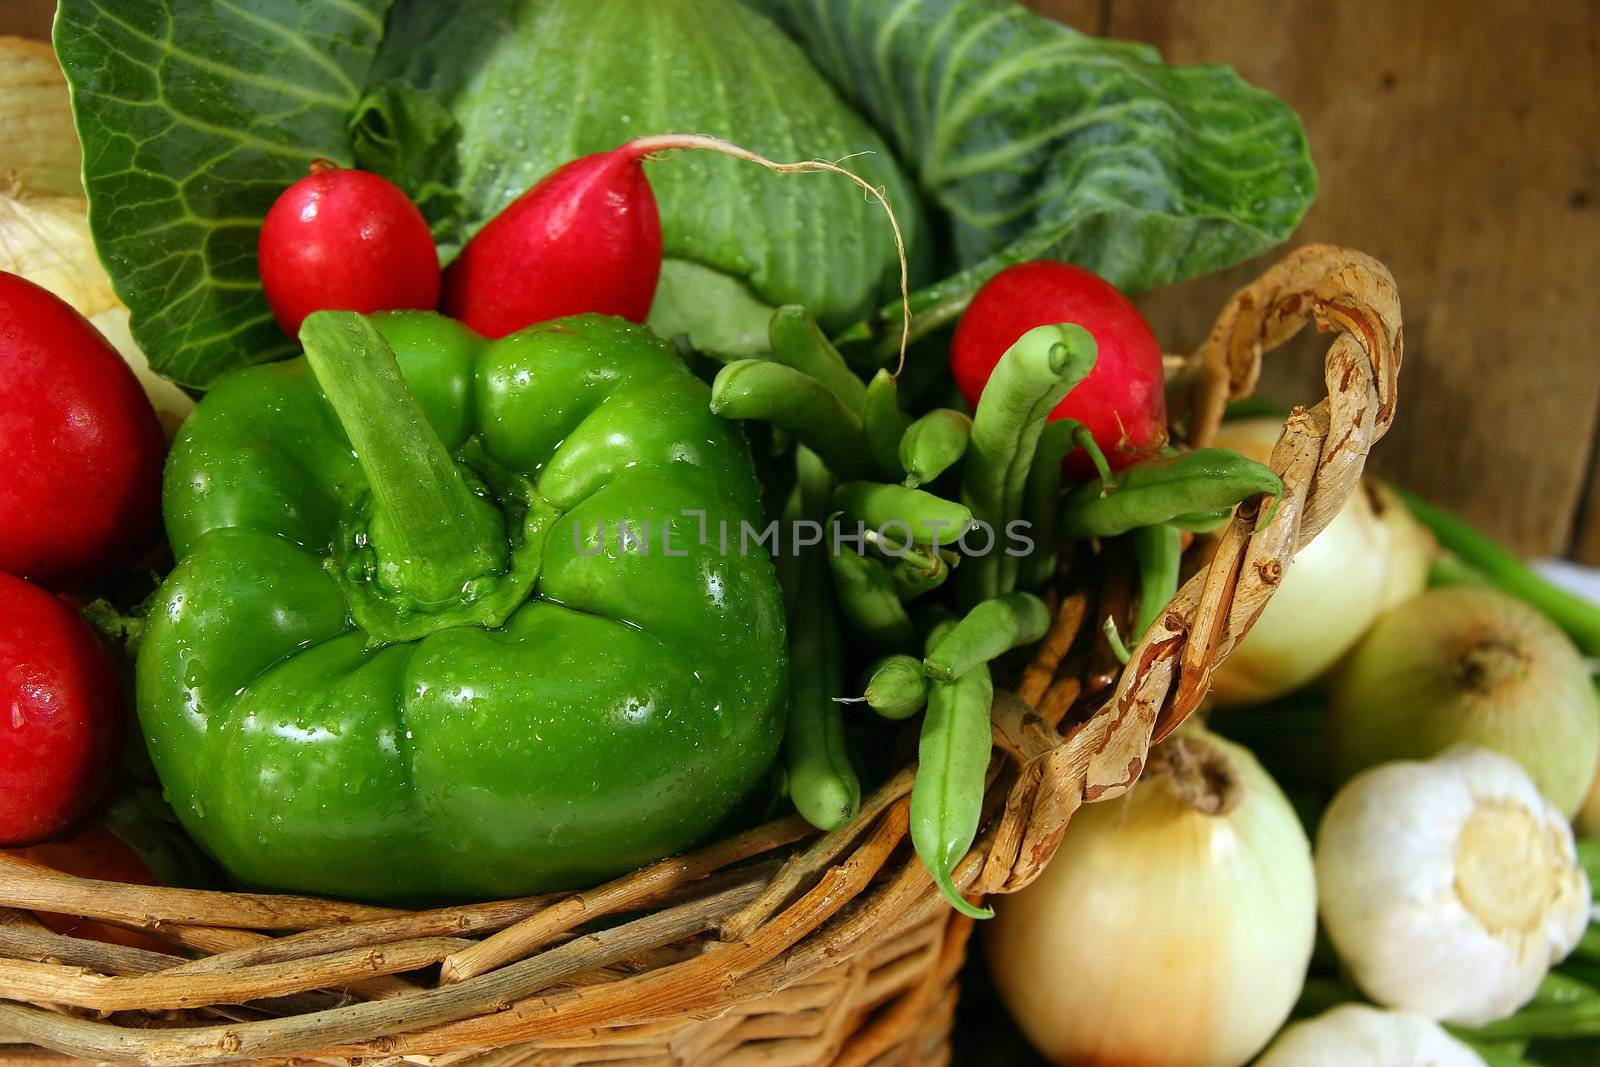 Garden vegetables by Sandralise